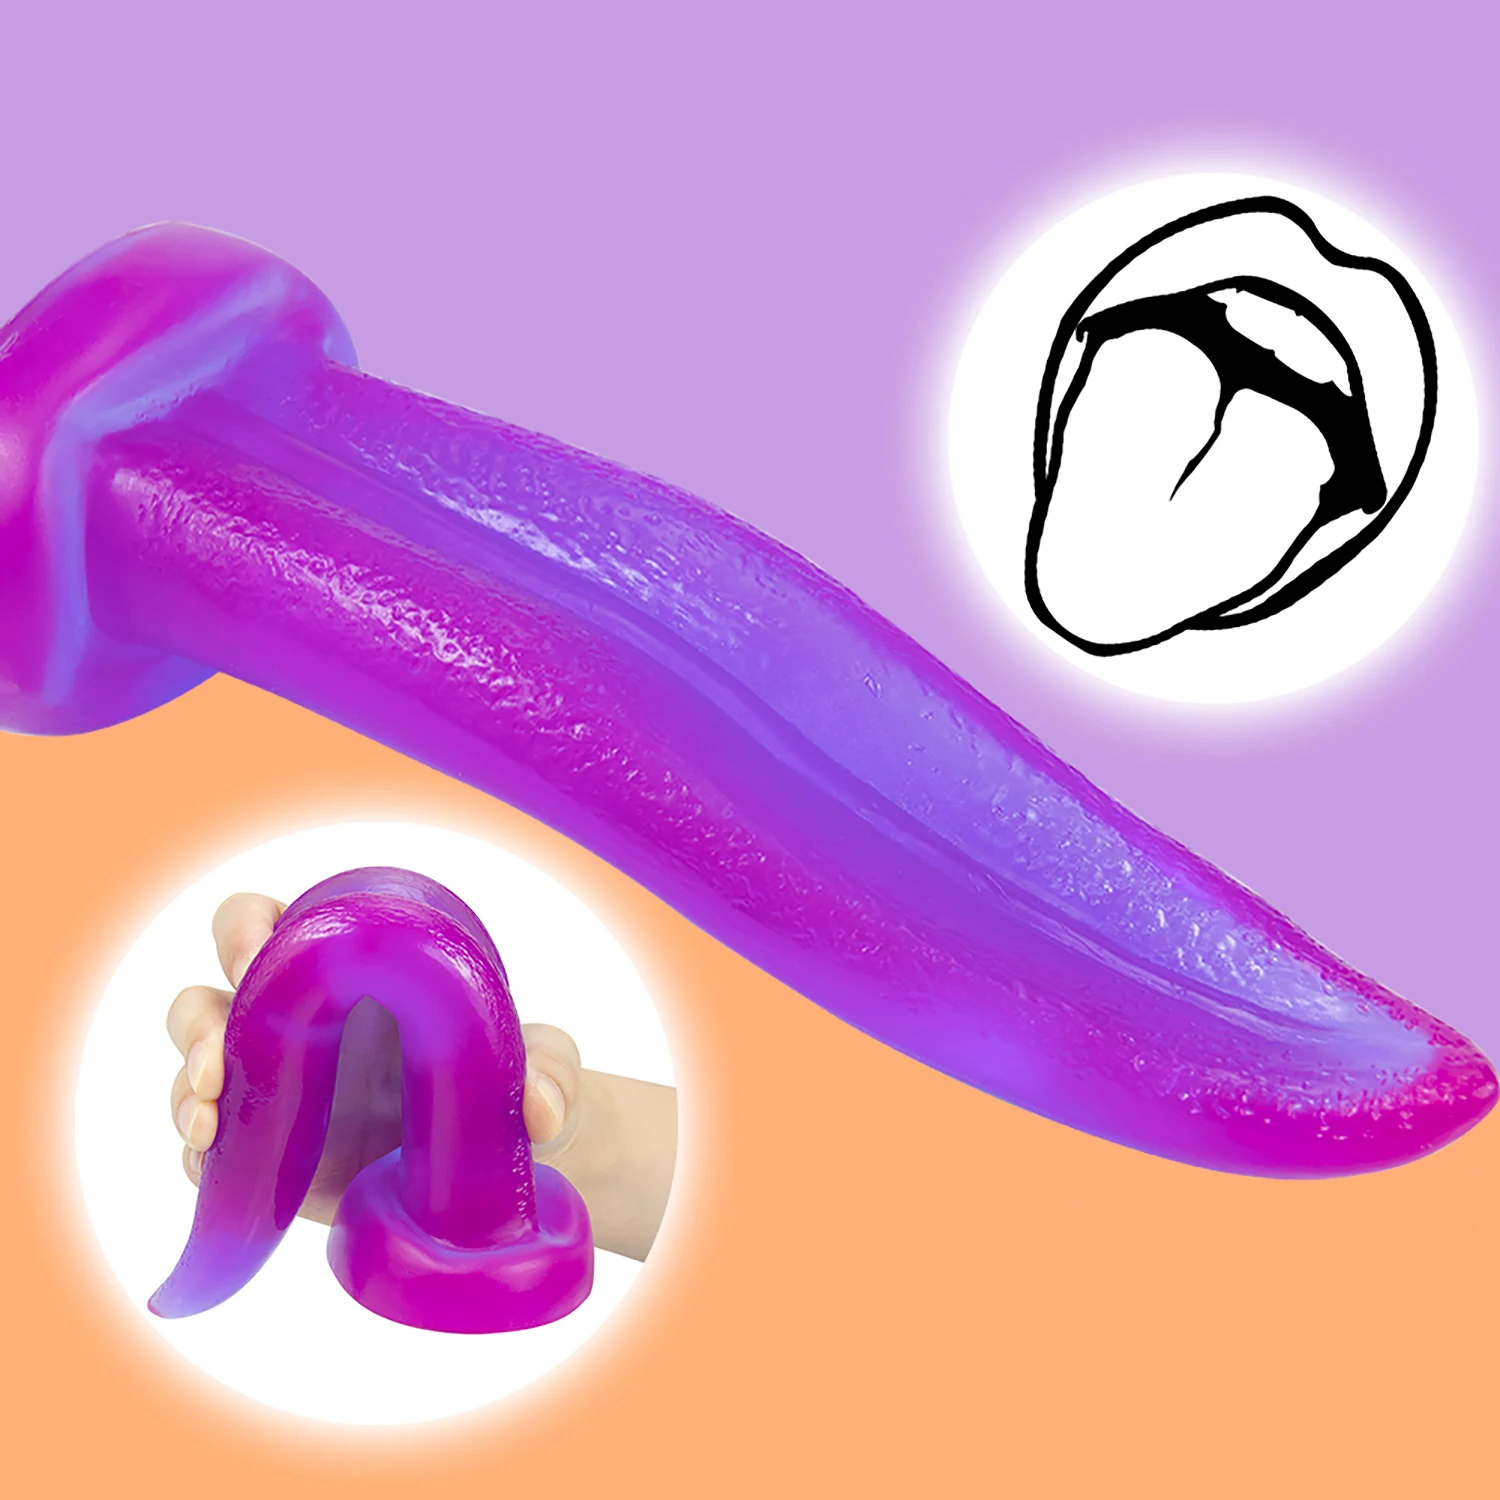 Simulare Limba Vibratoare Piele Moale, se Simt Anal Plug Penis Urias Erotic Penis Mare Dop de Fund Jucarii Sexuale Falus pentru Femei Masturbare Imagine 0